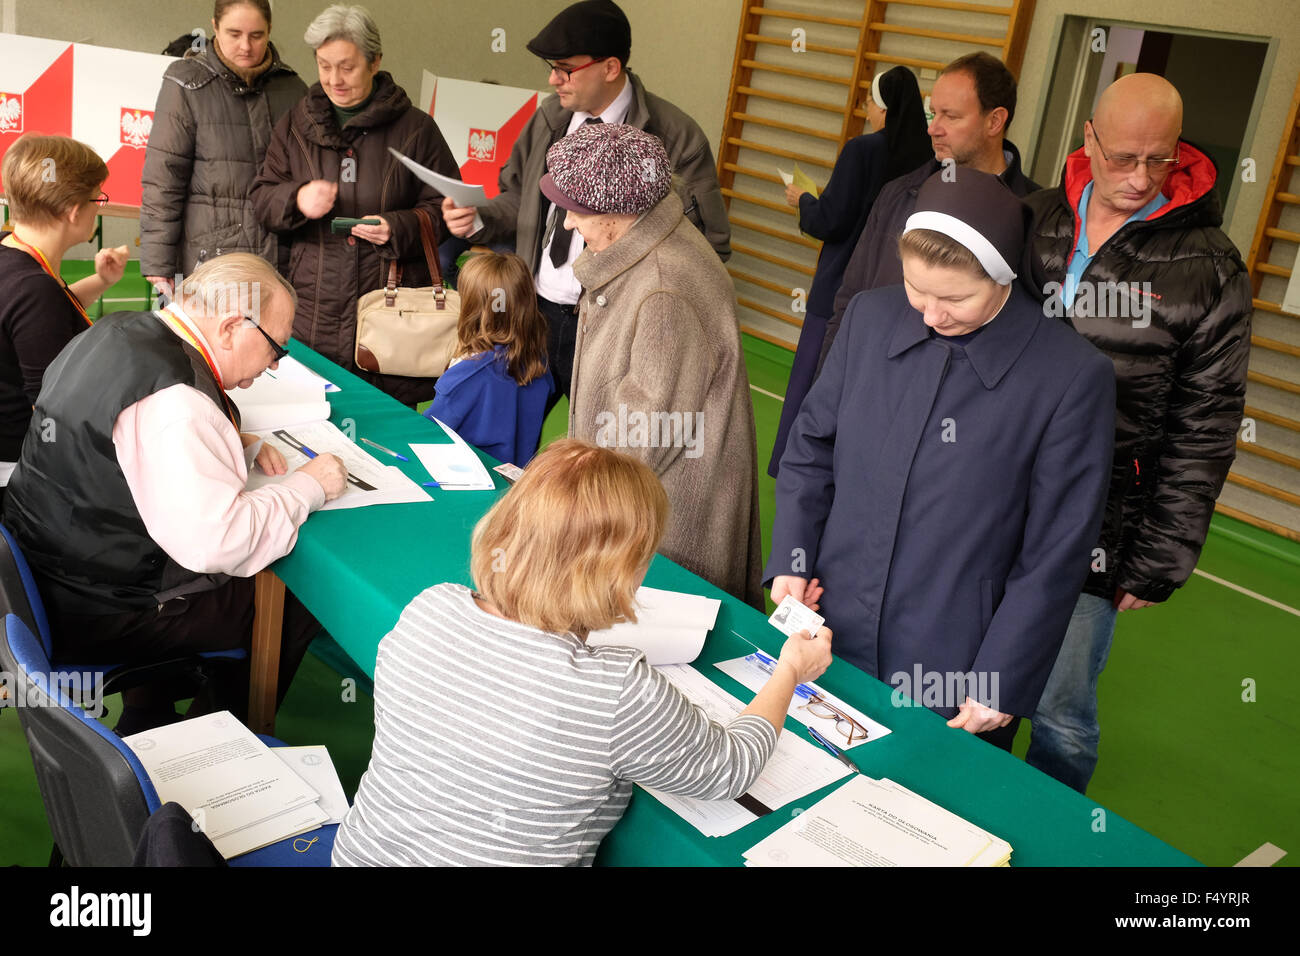 Warschau, Polen - Sonntag, 25. Oktober 2015 - Parlamentswahlen Wähler besuchen eine Abstimmung Wahllokal in einer Schule in der Altstadt von Warschau. Das Foto zeigt Anwohner einschließlich Nonnen Ankunft um 10:00 zu stimmen. Stockfoto